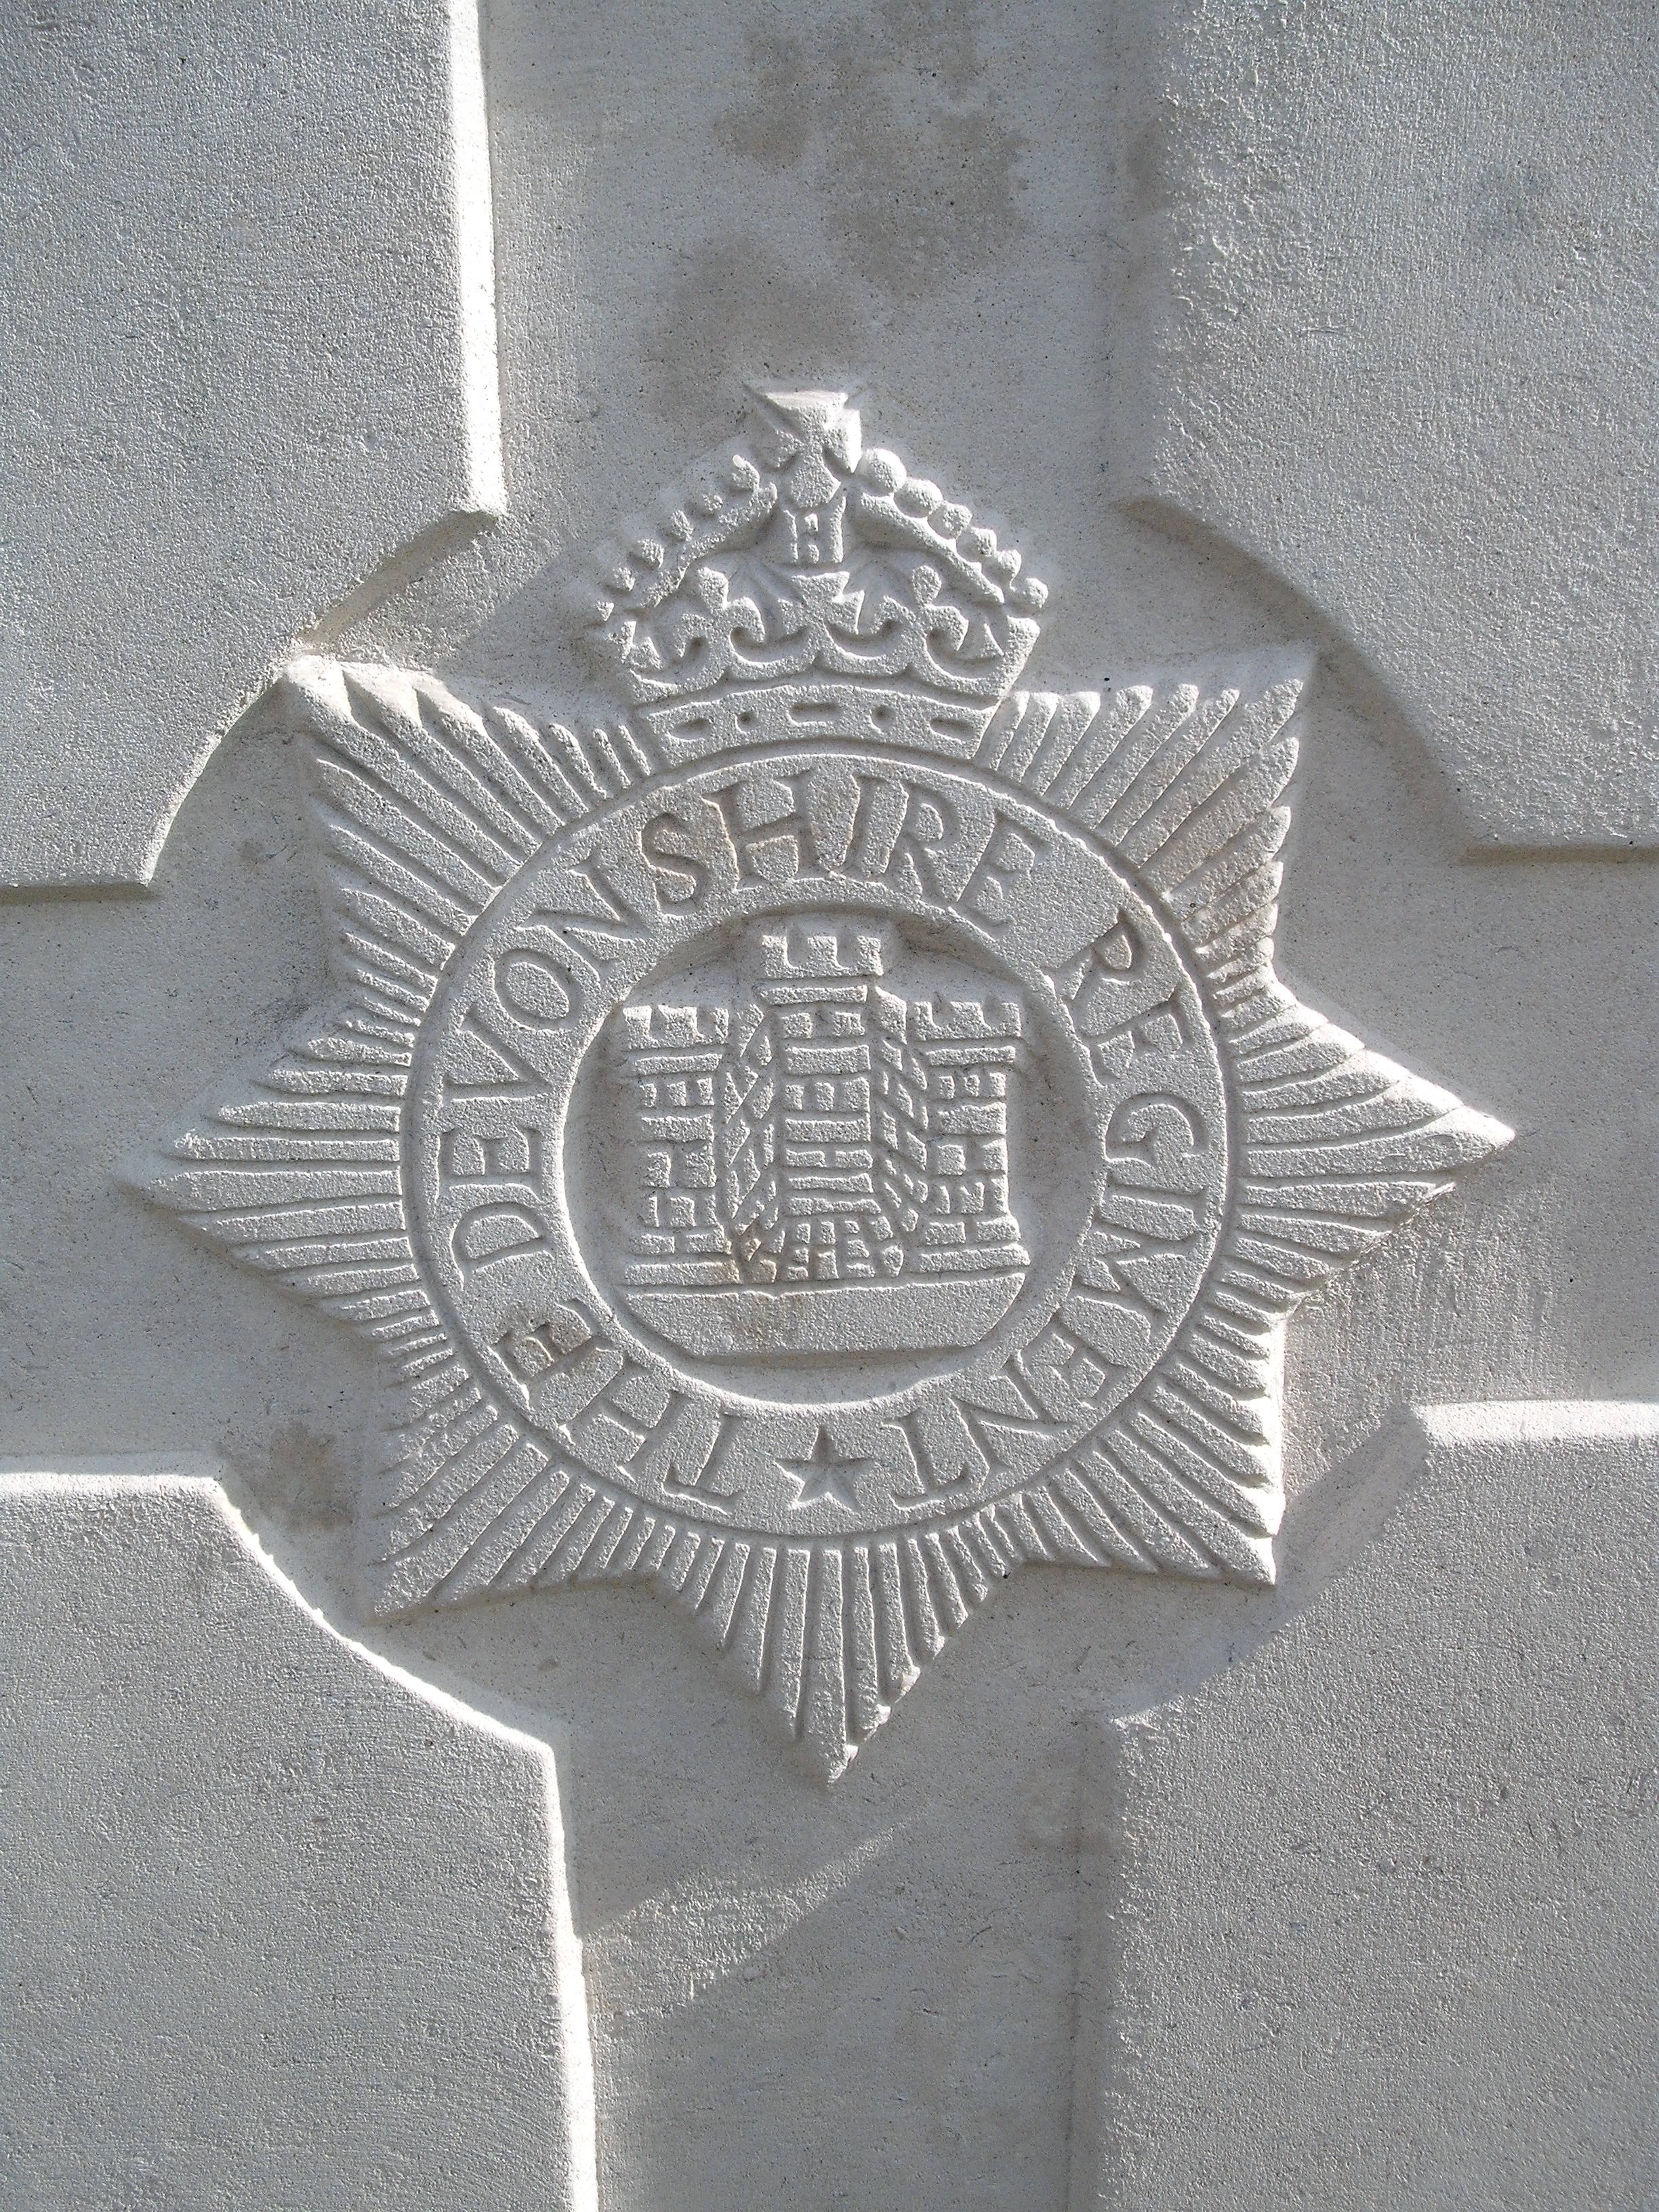 Cap badge of the Devonshire Regiment